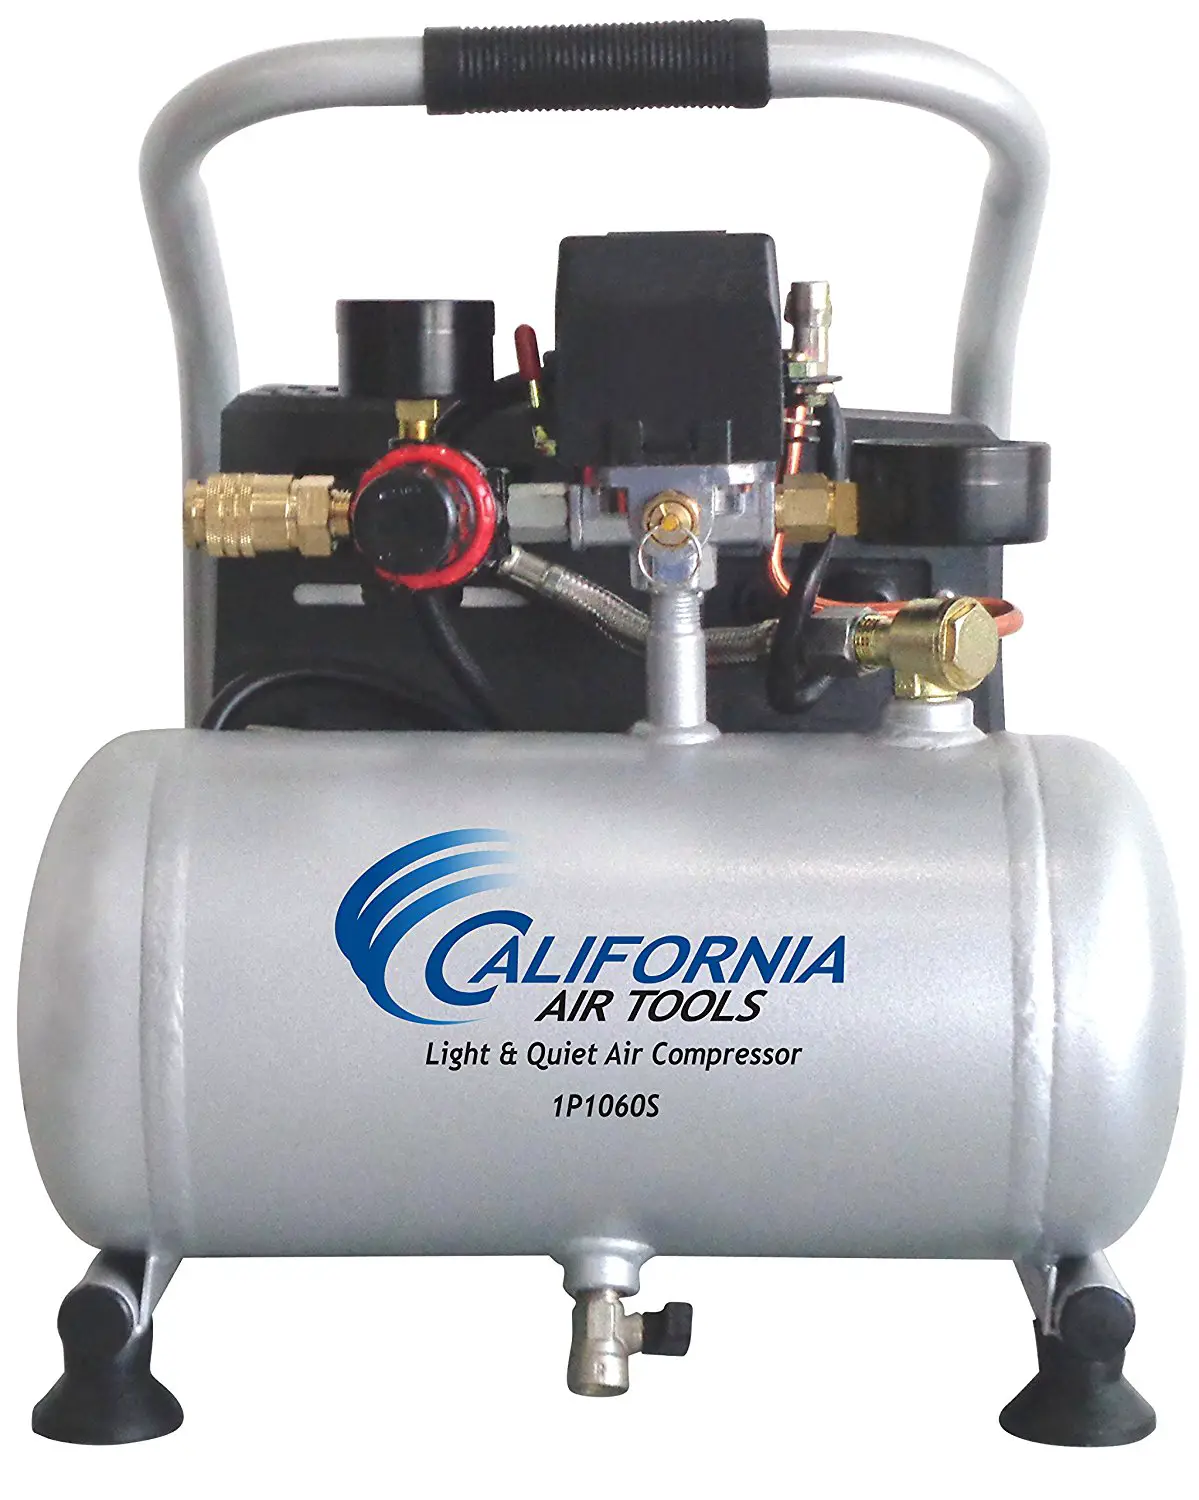 California air tools cat-1p1060s Review